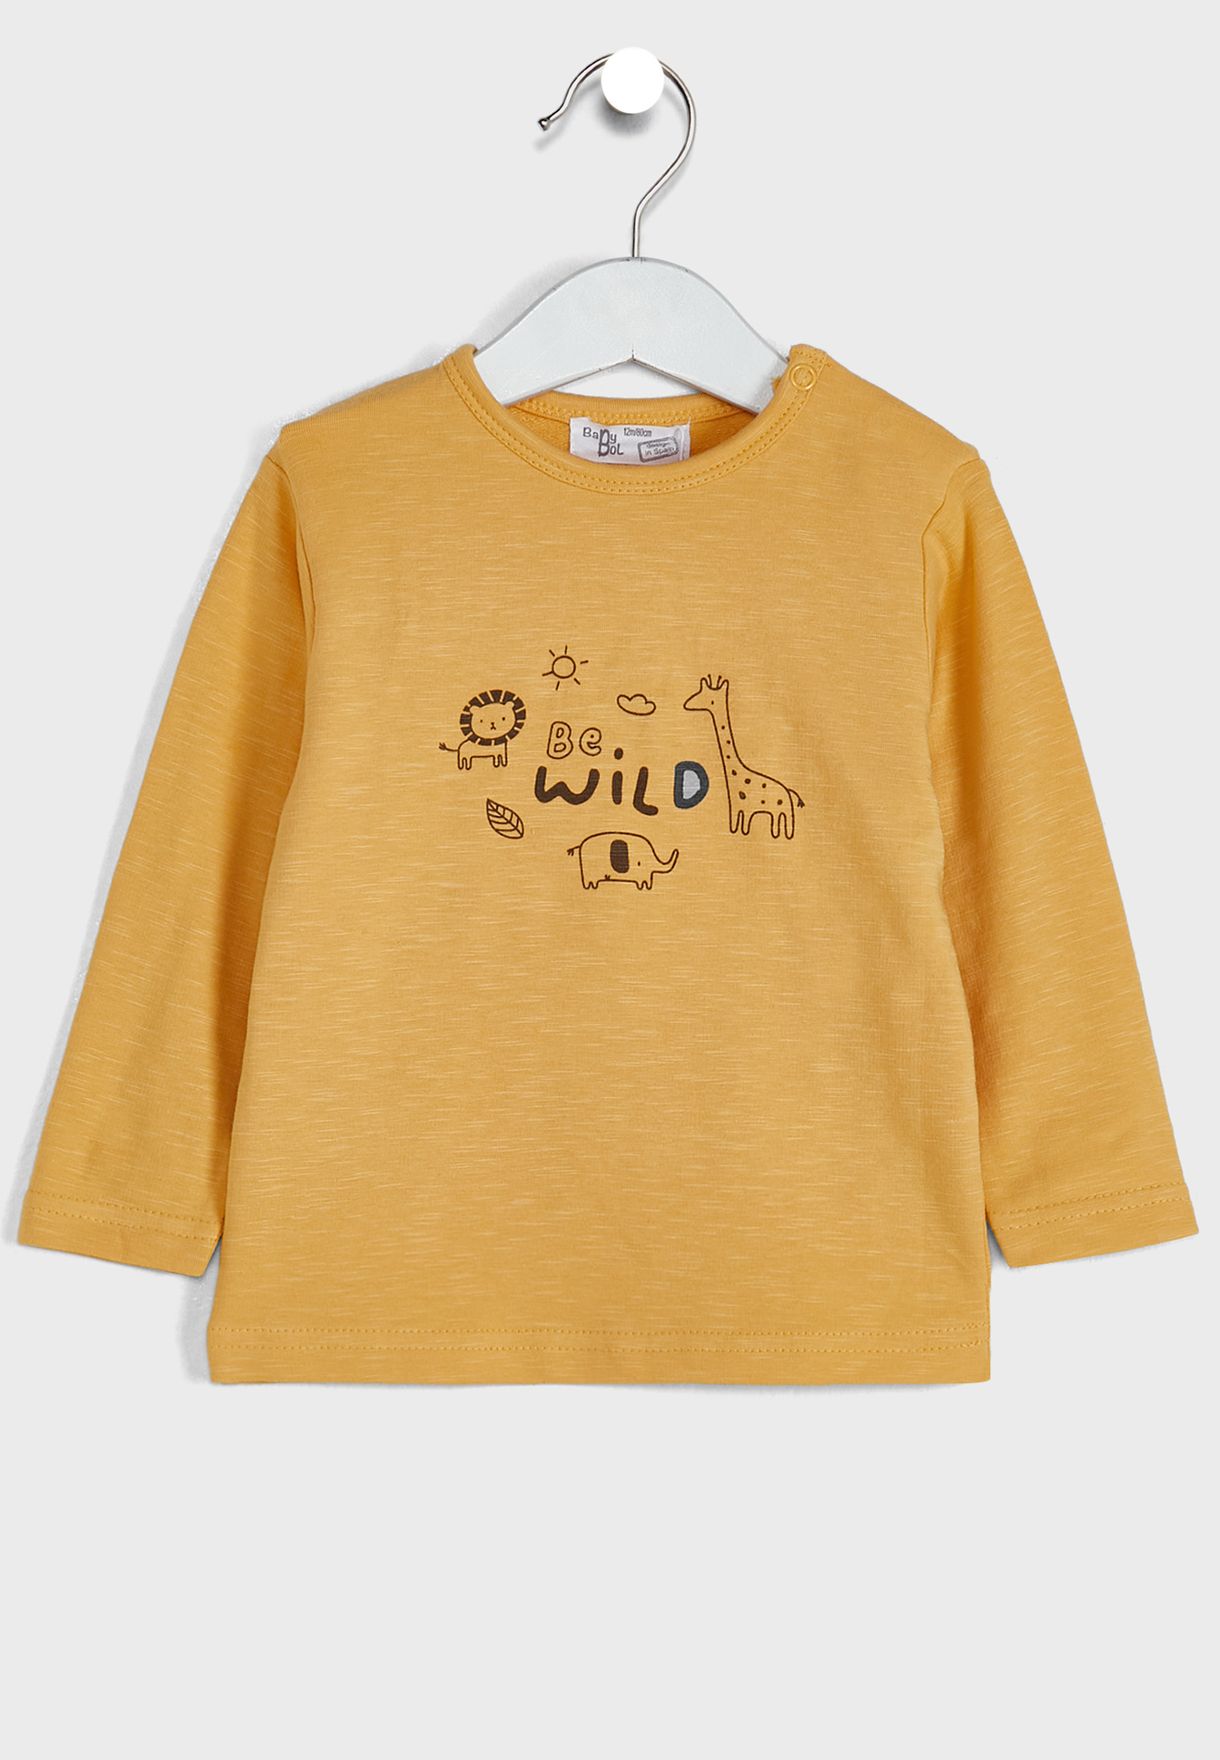 Infant Printed T-Shirt & Sweatpants Set